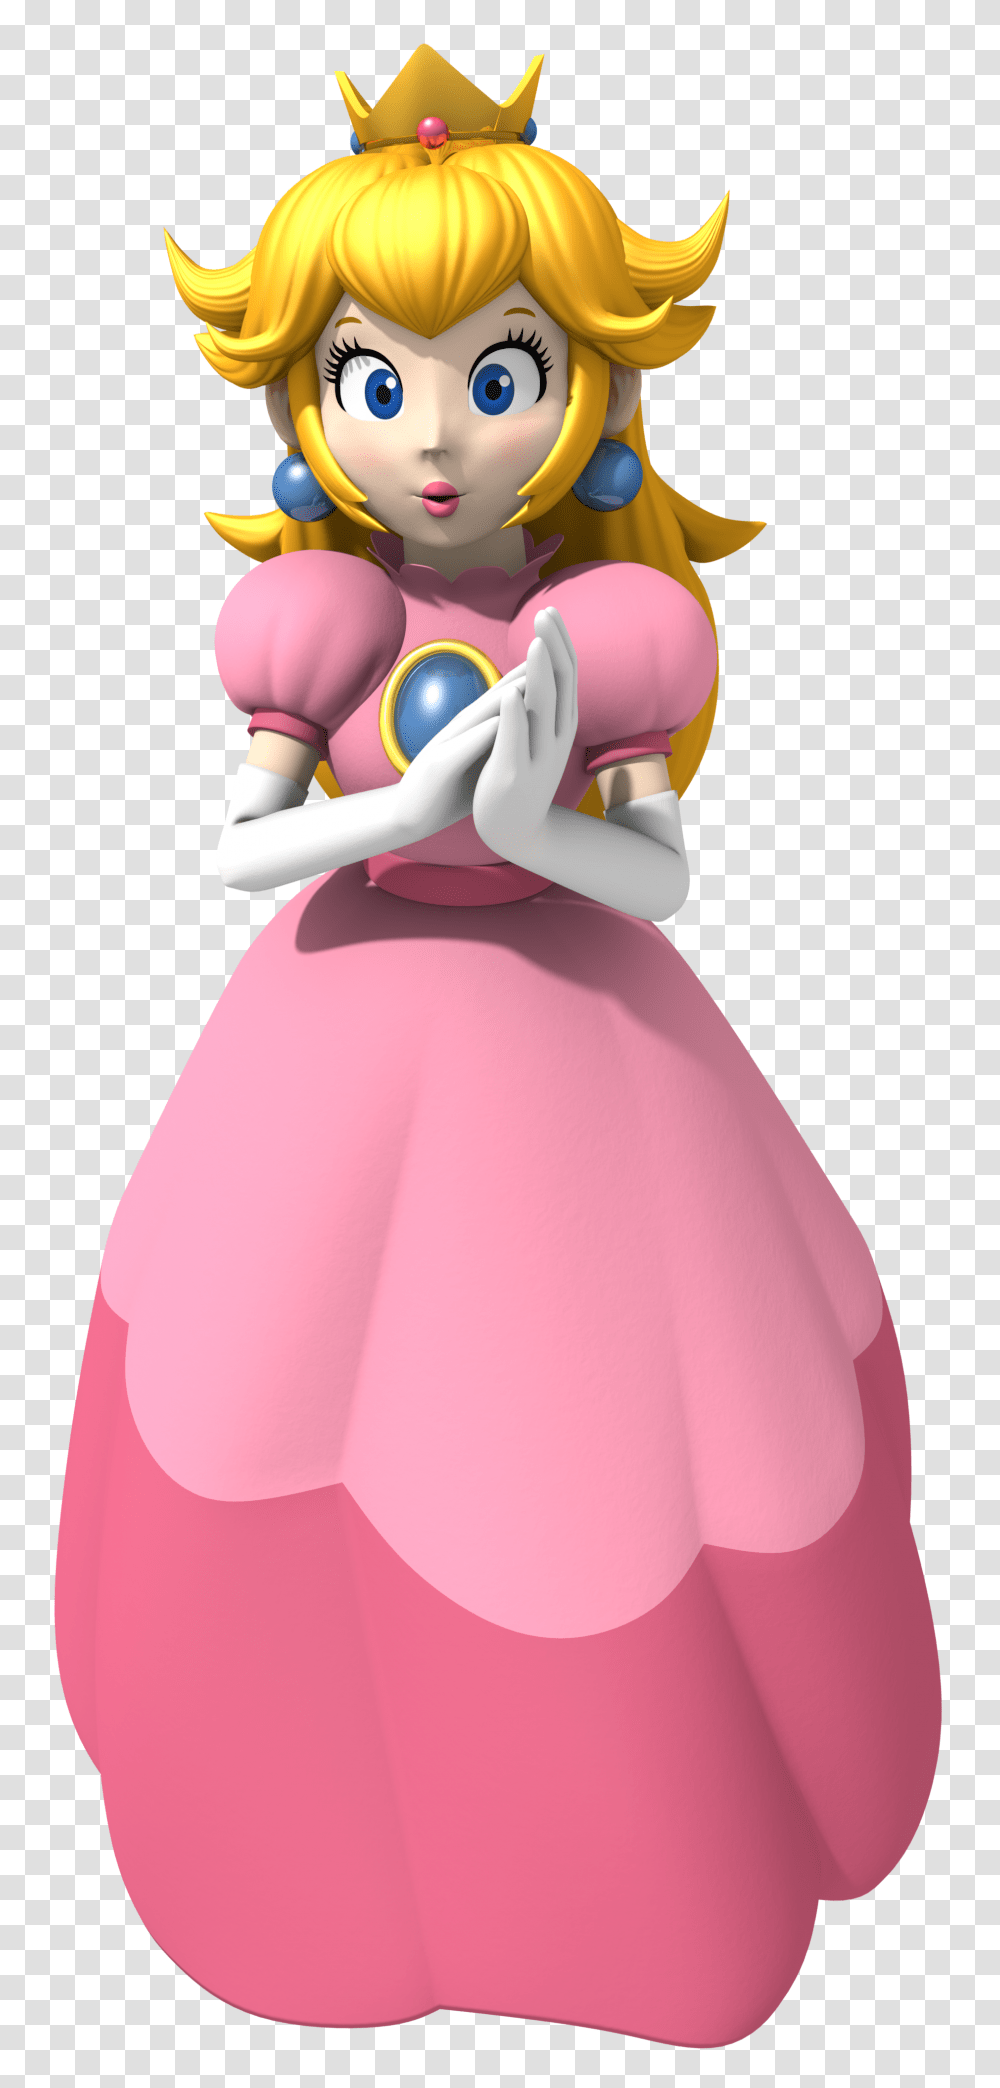 Princess Peach Background Princess Peach Mario Kart, Clothing, Female, Evening Dress, Robe Transparent Png